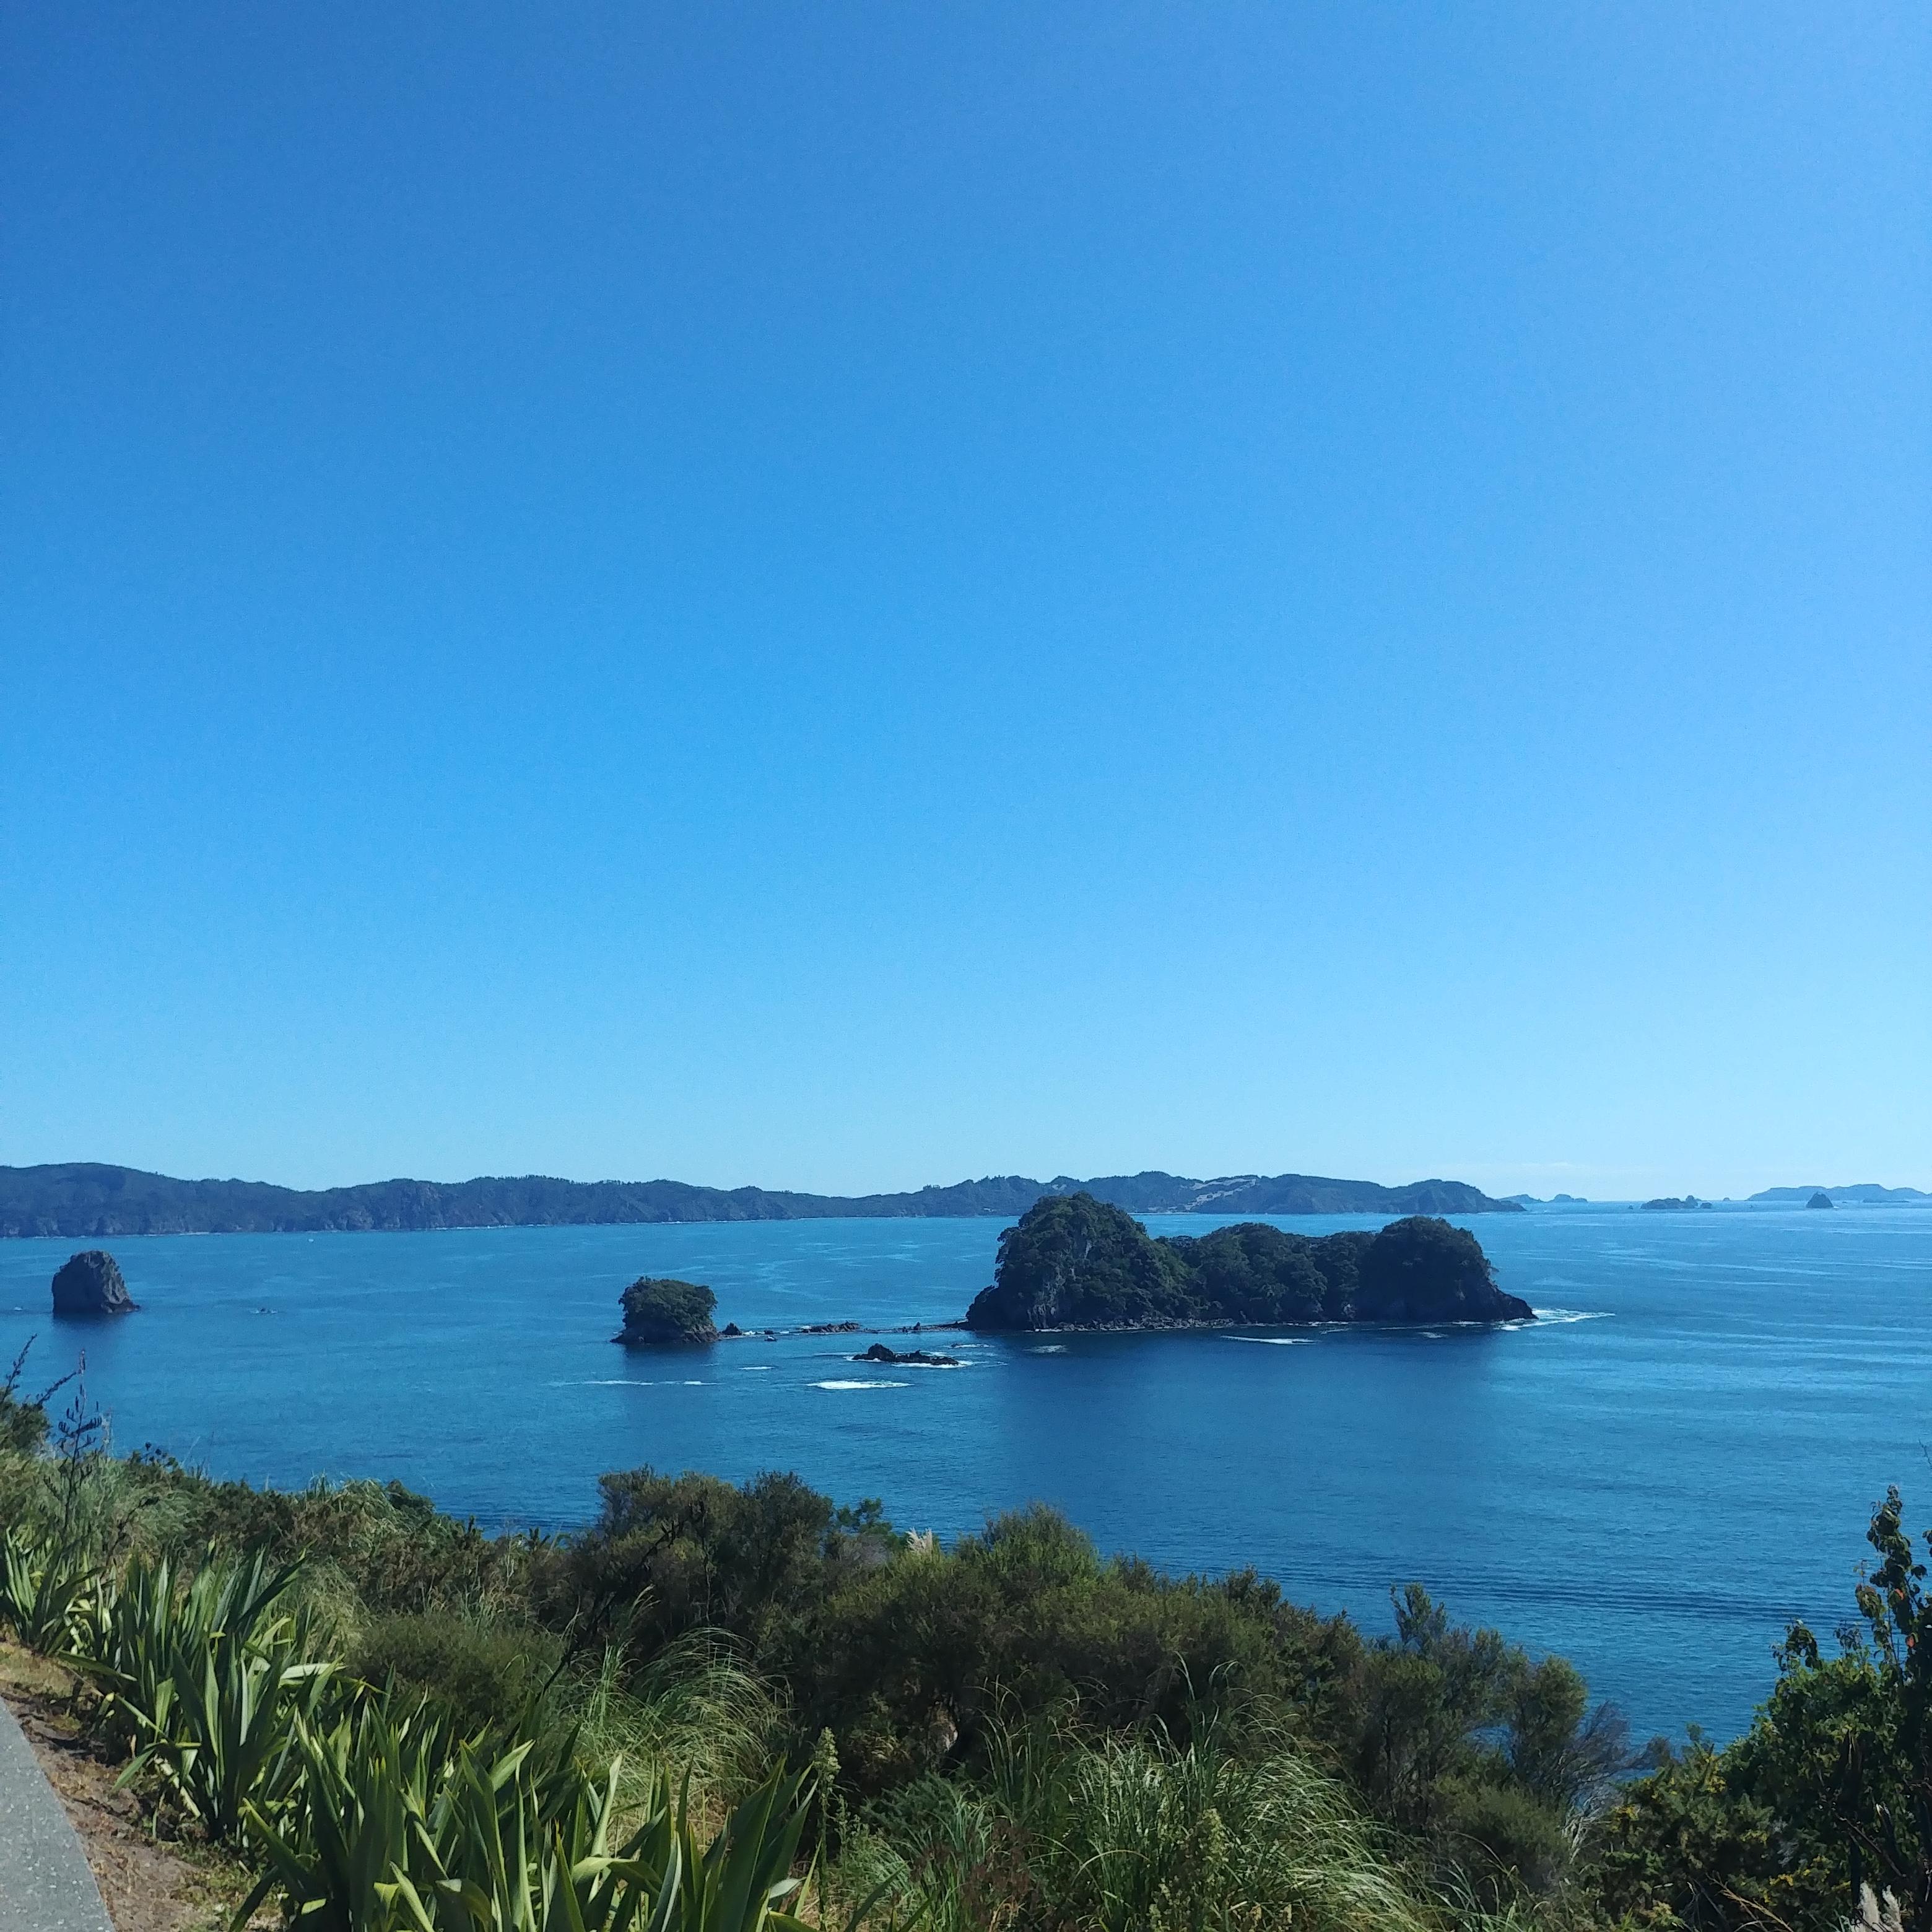 뉴질랜드 북섬 여행 코로만델 커시드럴코브 Cathedral Cove